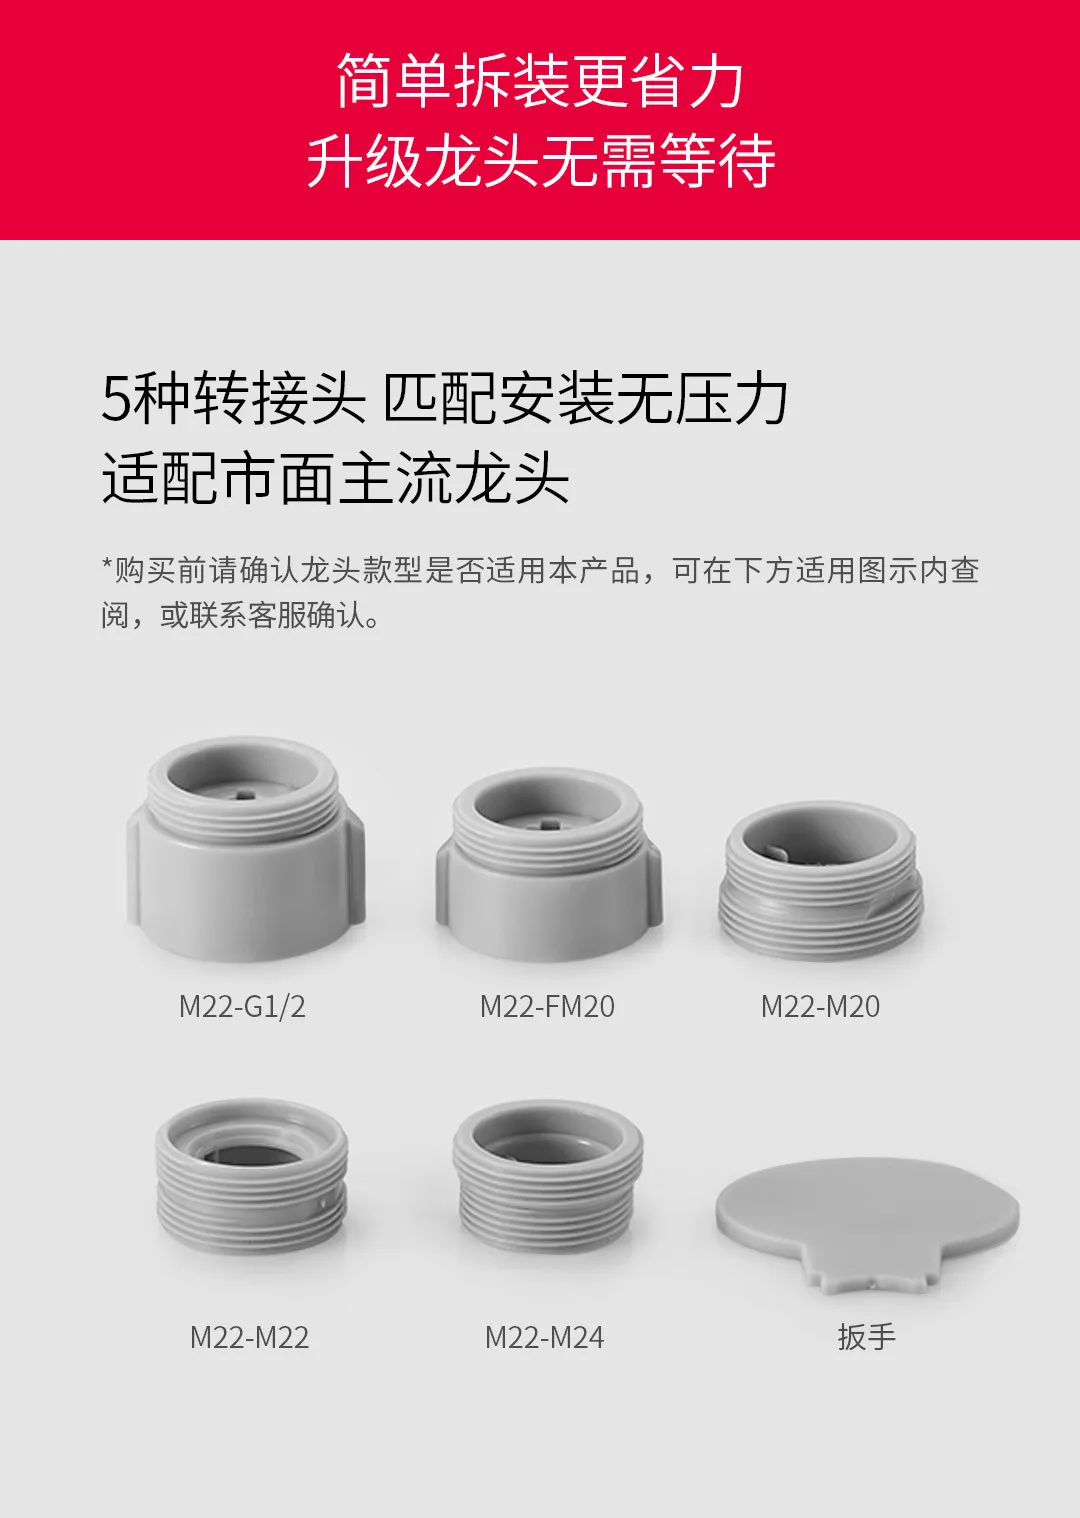 Xiaomi DABAI двойной функциональный смеситель двойной водный цветок режим легко установить кран 360 ° универсальная вода Xiomi дом для кухни